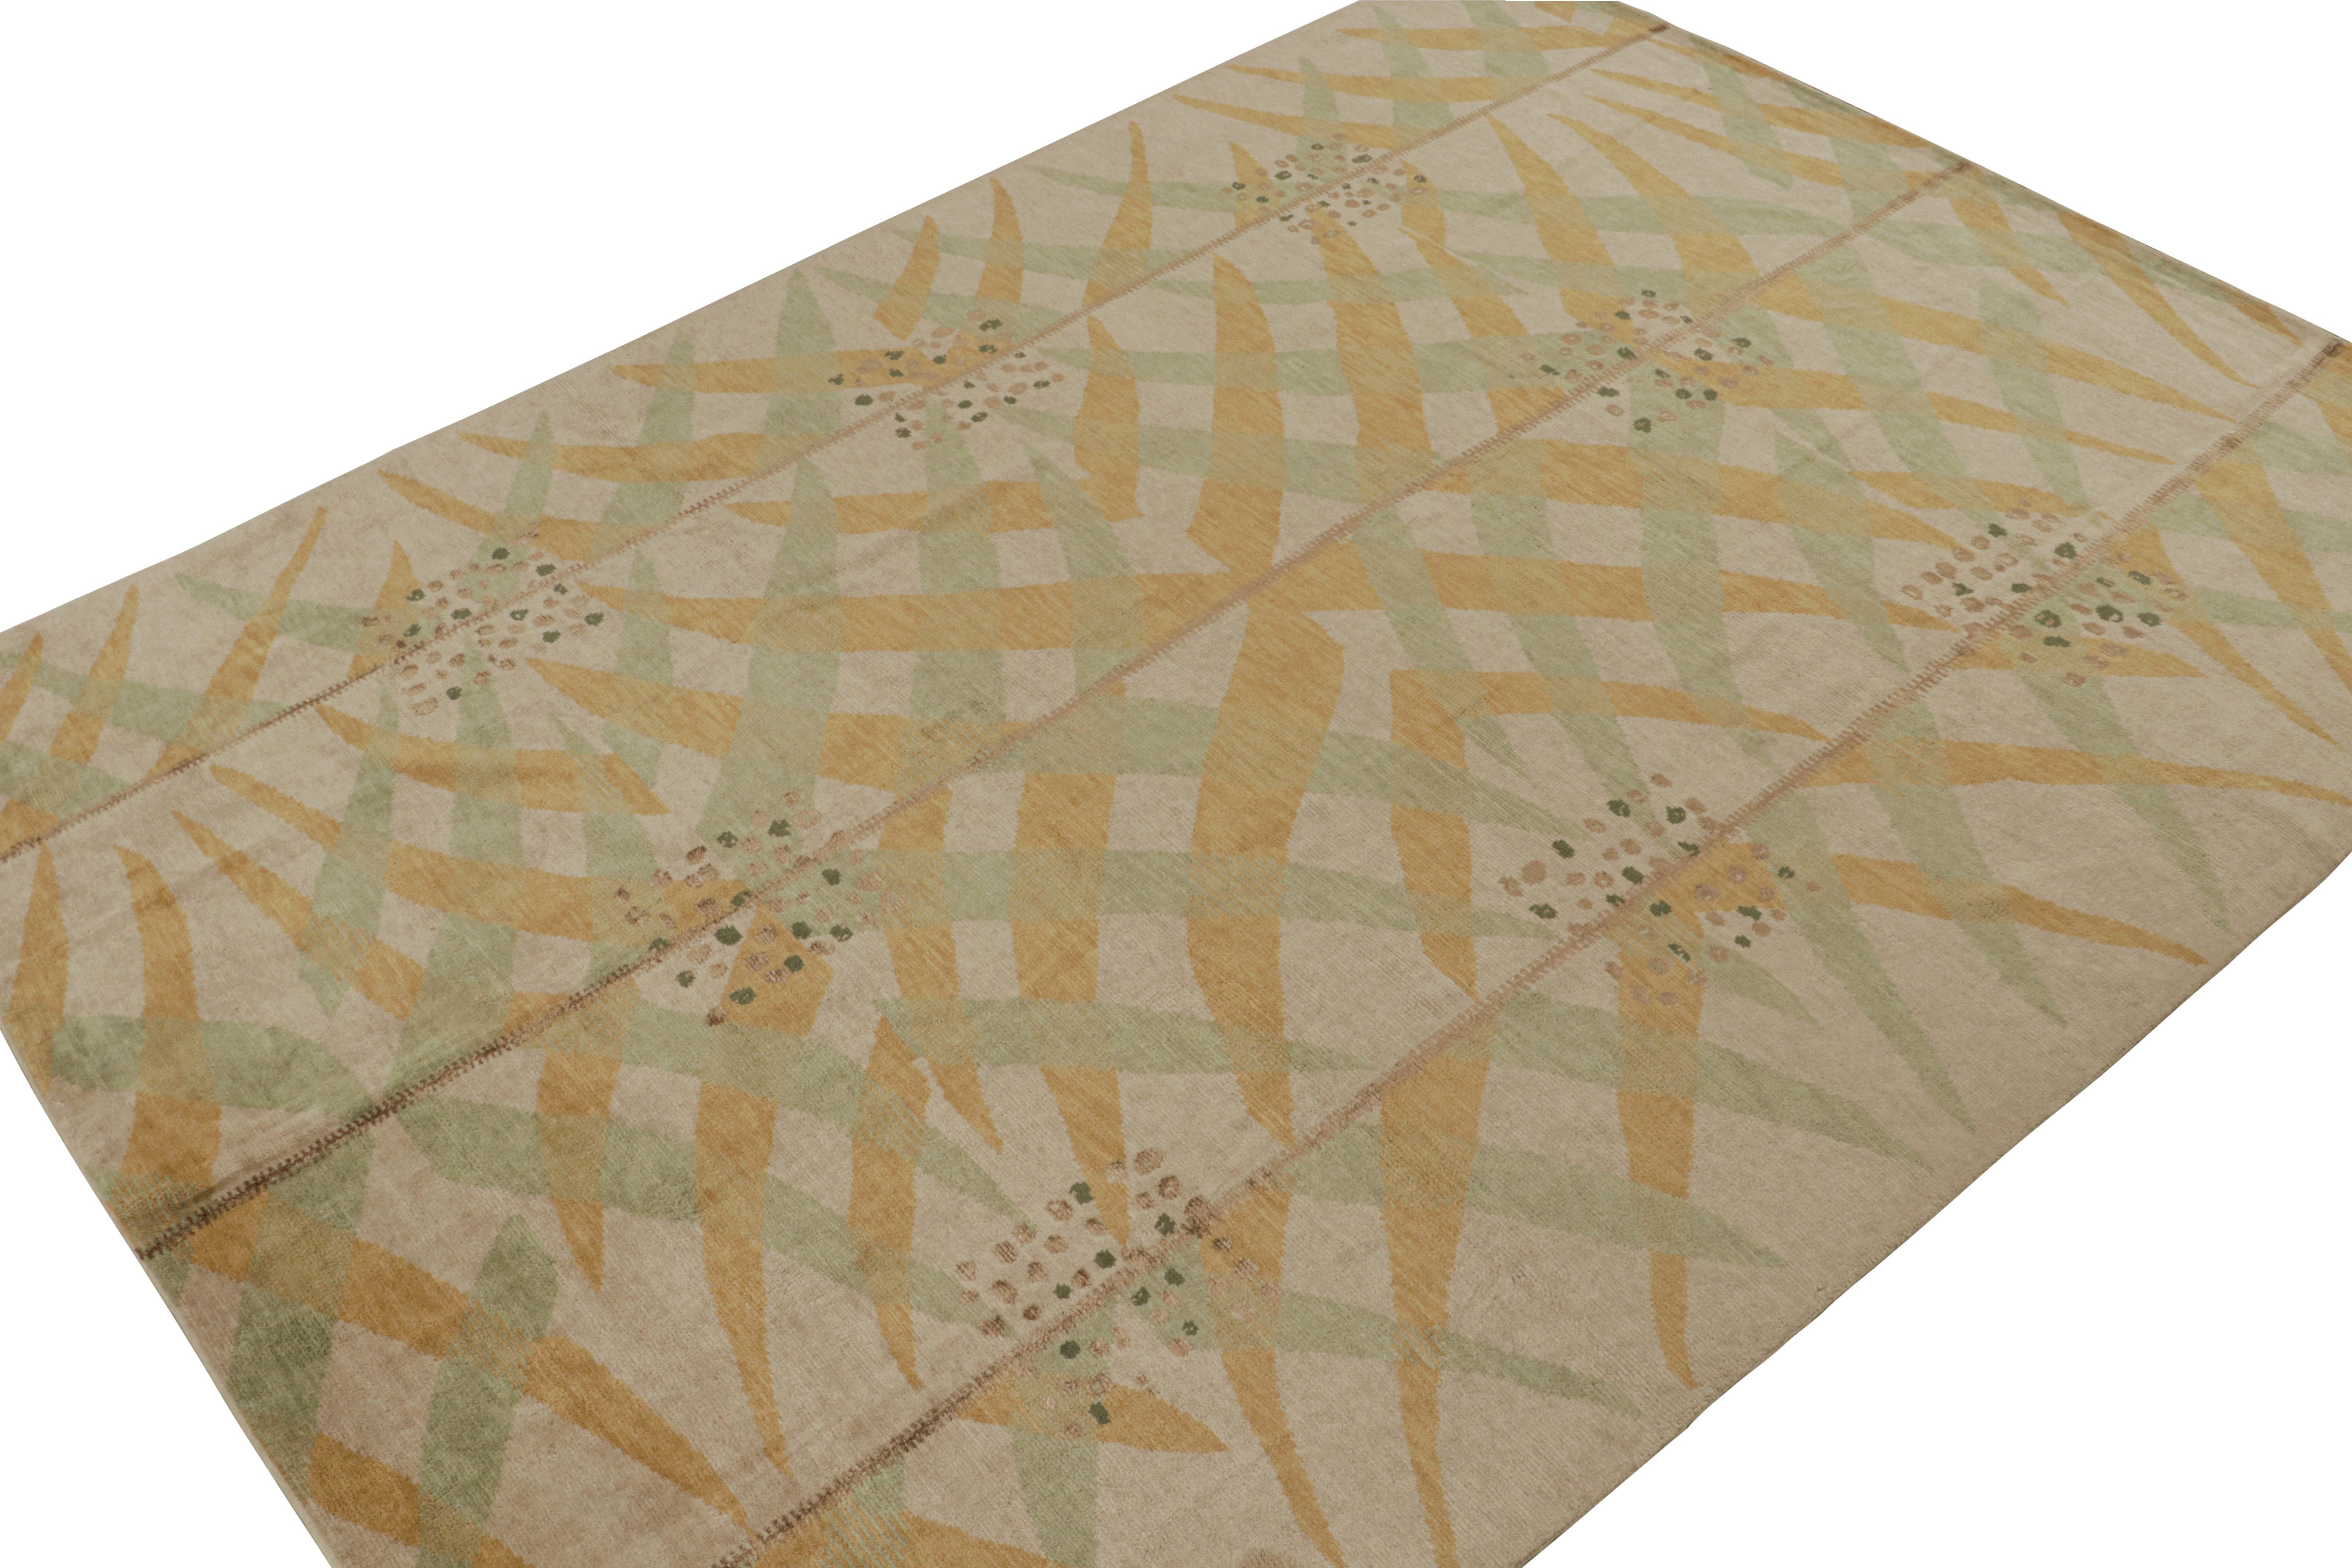 Dieser 10x14 große Teppich aus der Scandinavian Collection'S von Rug & Kilim ist aus Wolle handgeknüpft.

Über das Design:

Dieses Design ist in Beige mit goldenen und grünen geometrischen Mustern gehalten, die vom schwedischen Deco-Stil der